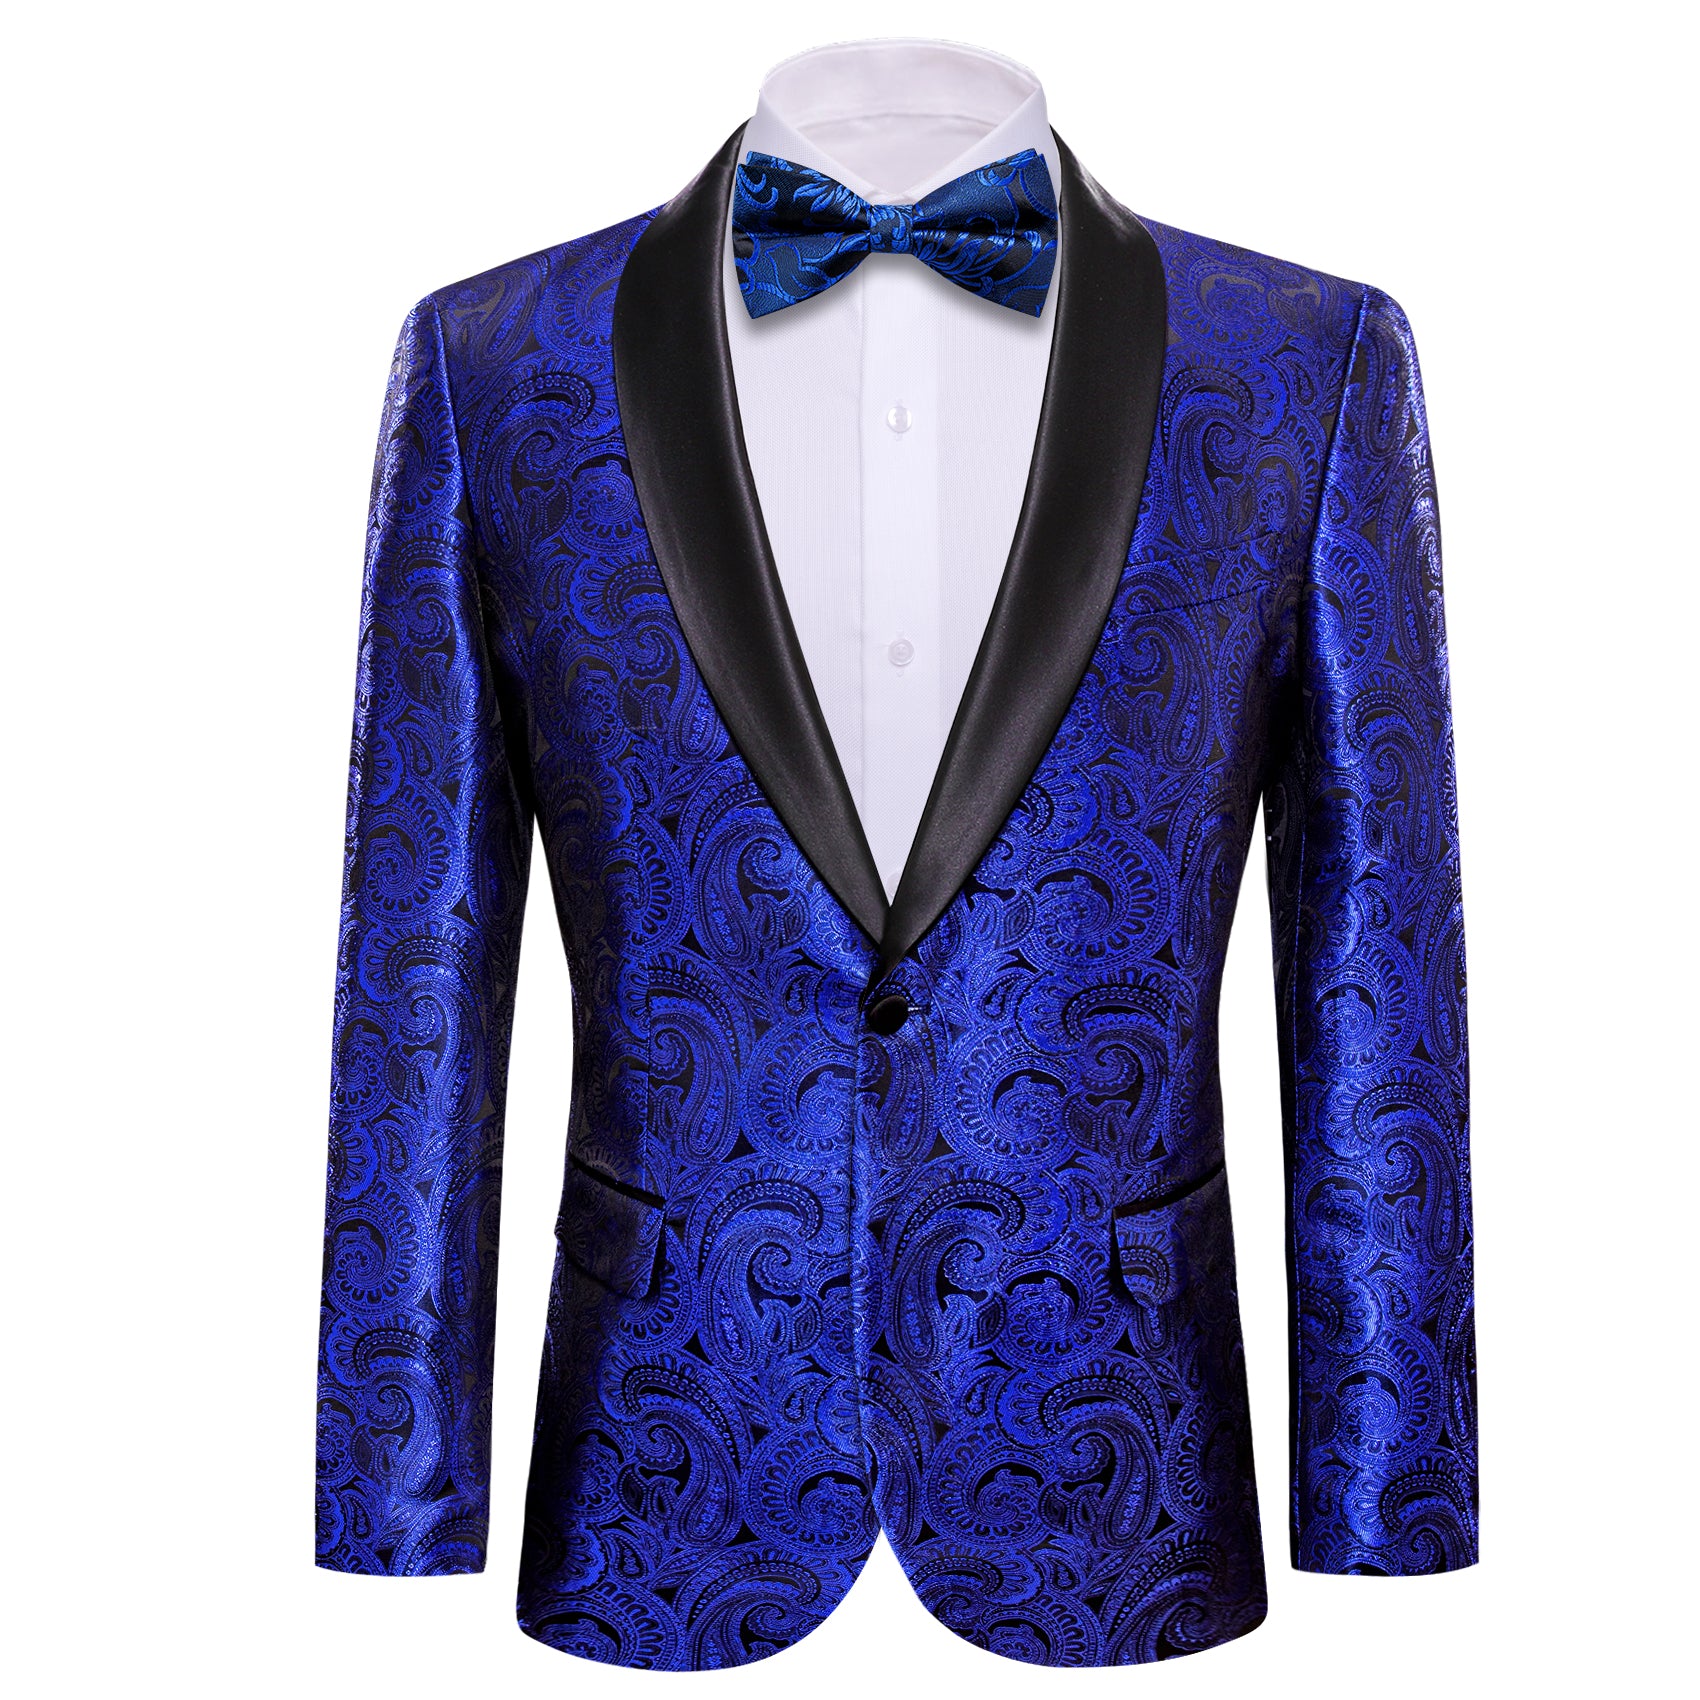 Men's Dress Party Cobalt Blue Floral Suit Jacket Slim One Button Stylish Blazer